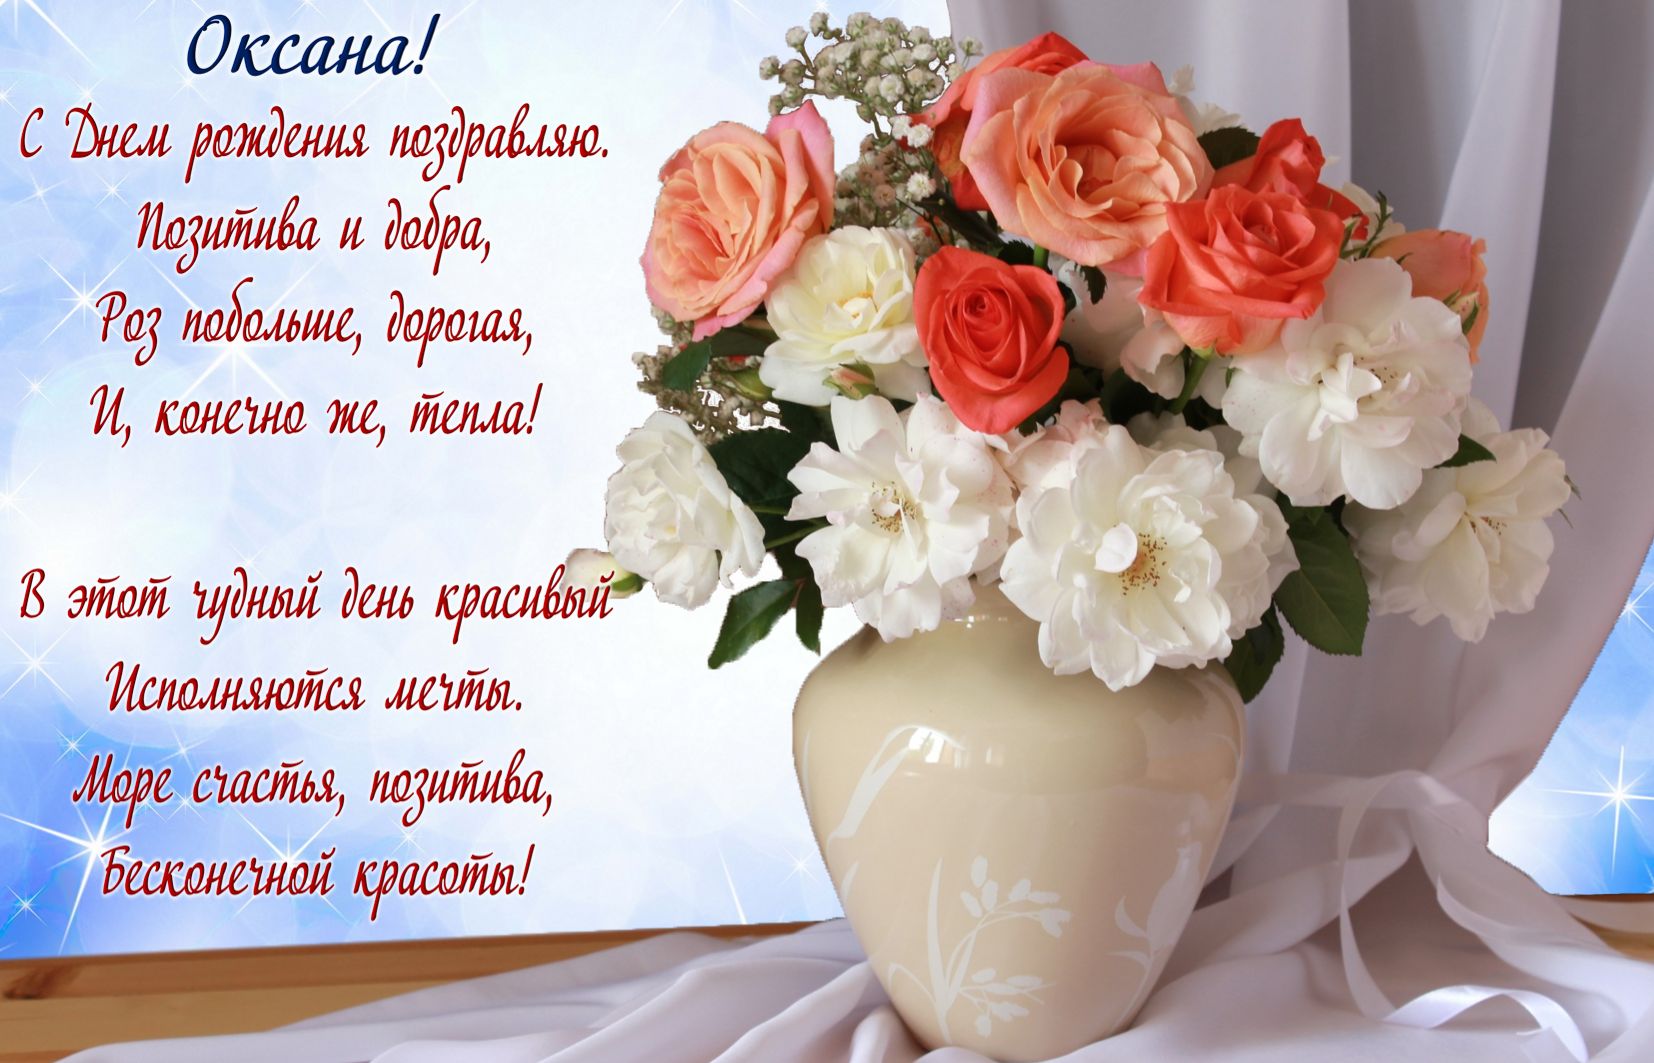 Цветы в вазе и пожелание для Оксаны